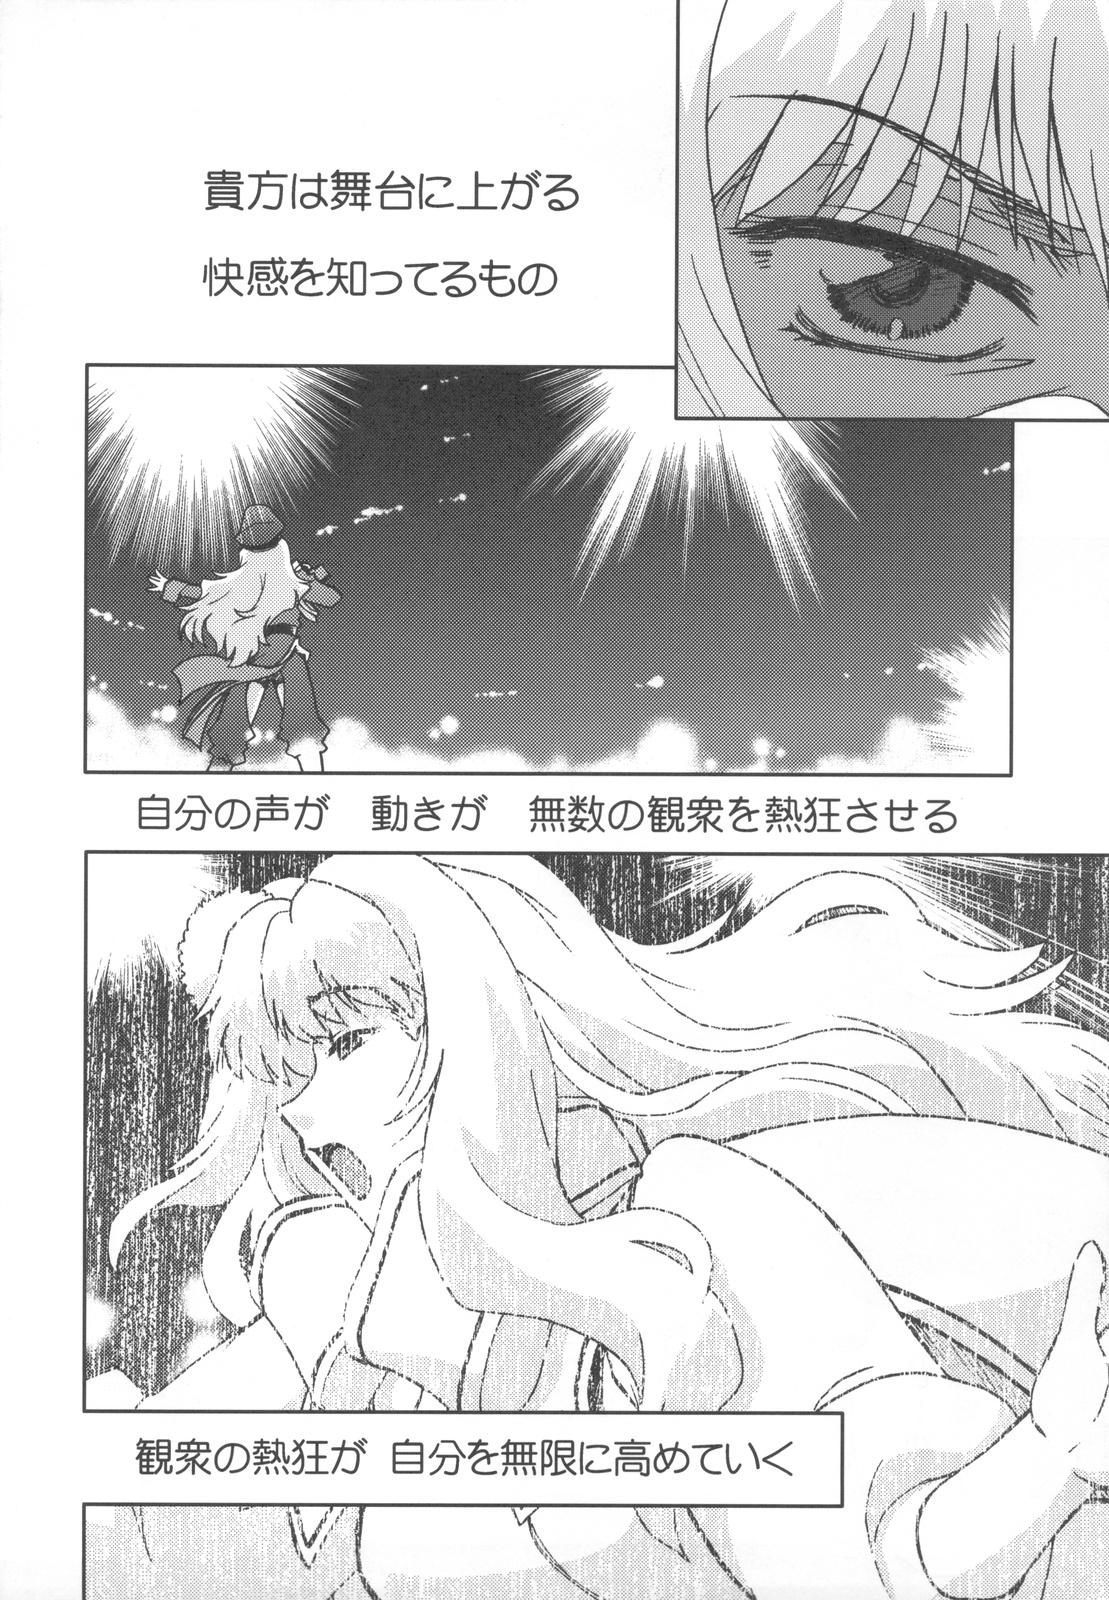 Camgirl Kishou Tenketsu 7 - Macross frontier Brother - Page 10